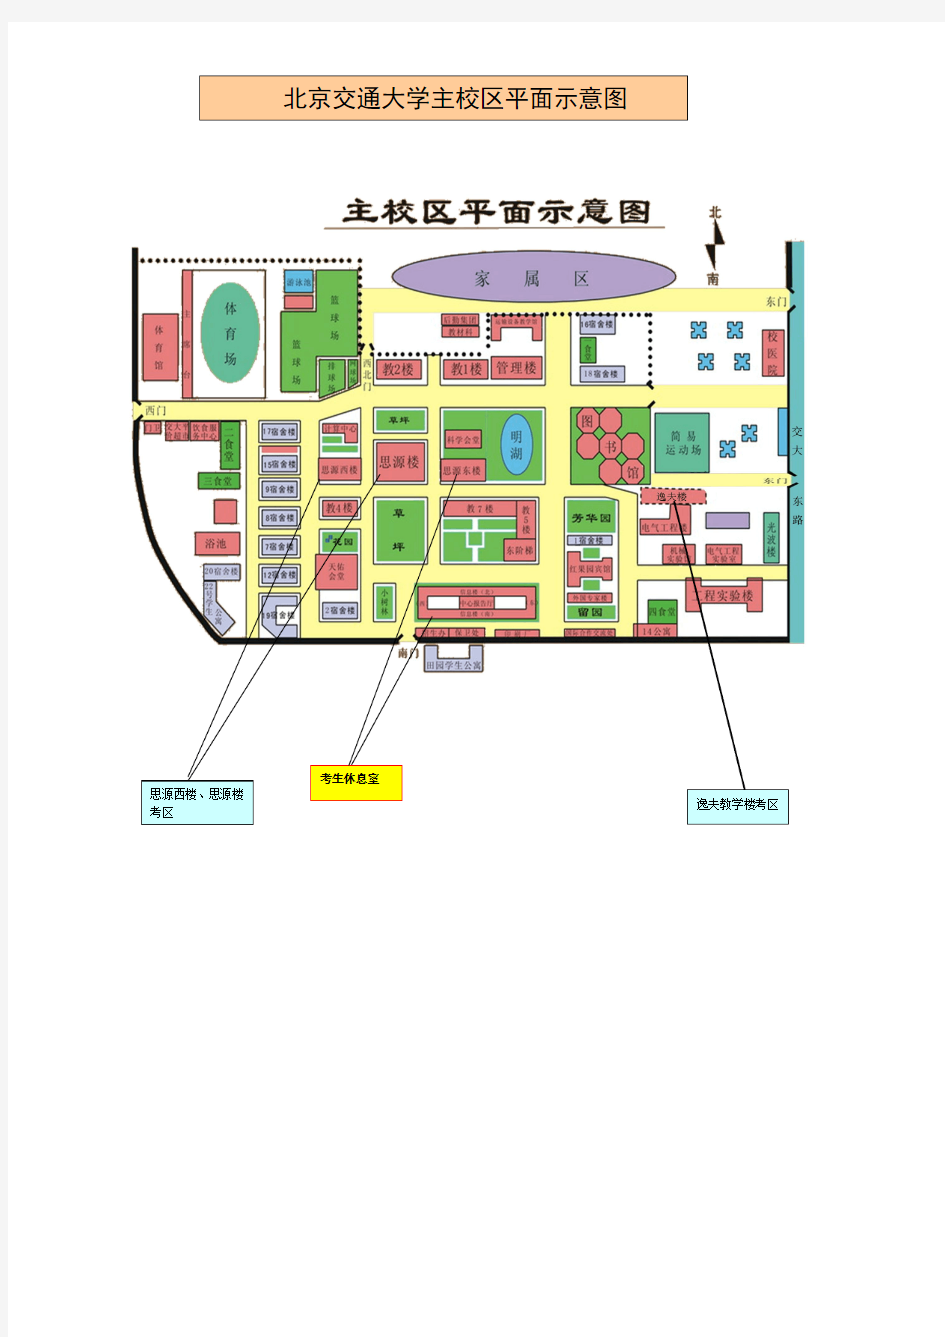 北京交通大学主校区平面图